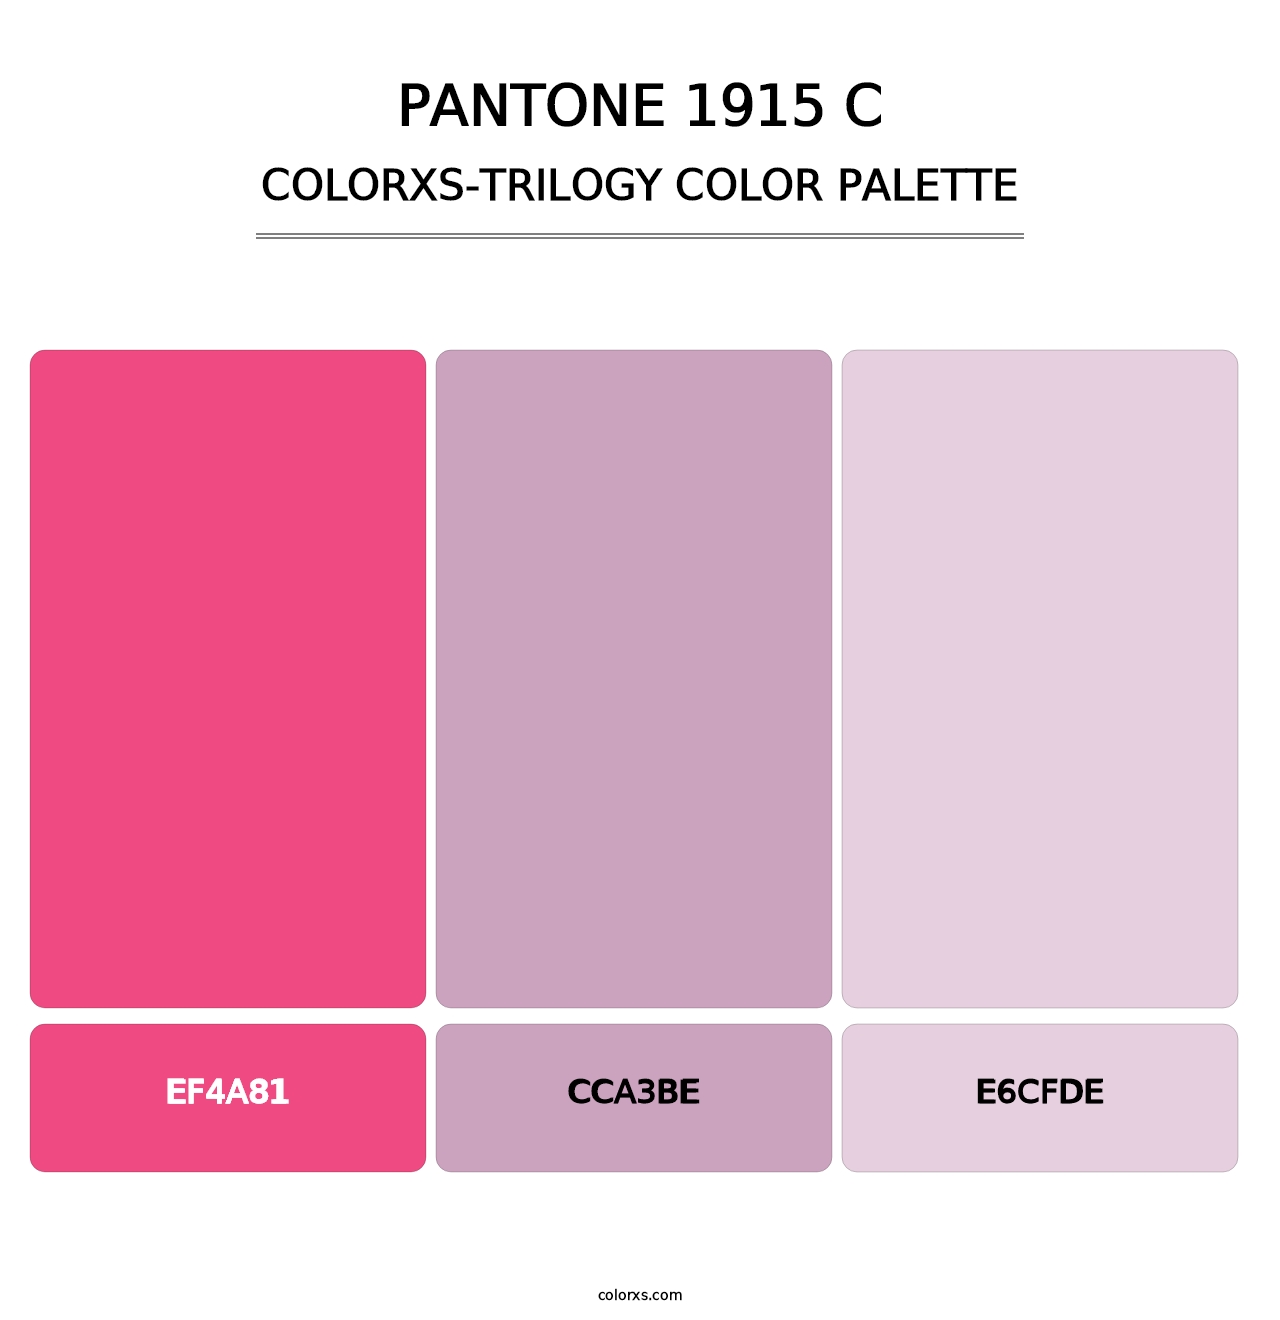 PANTONE 1915 C - Colorxs Trilogy Palette